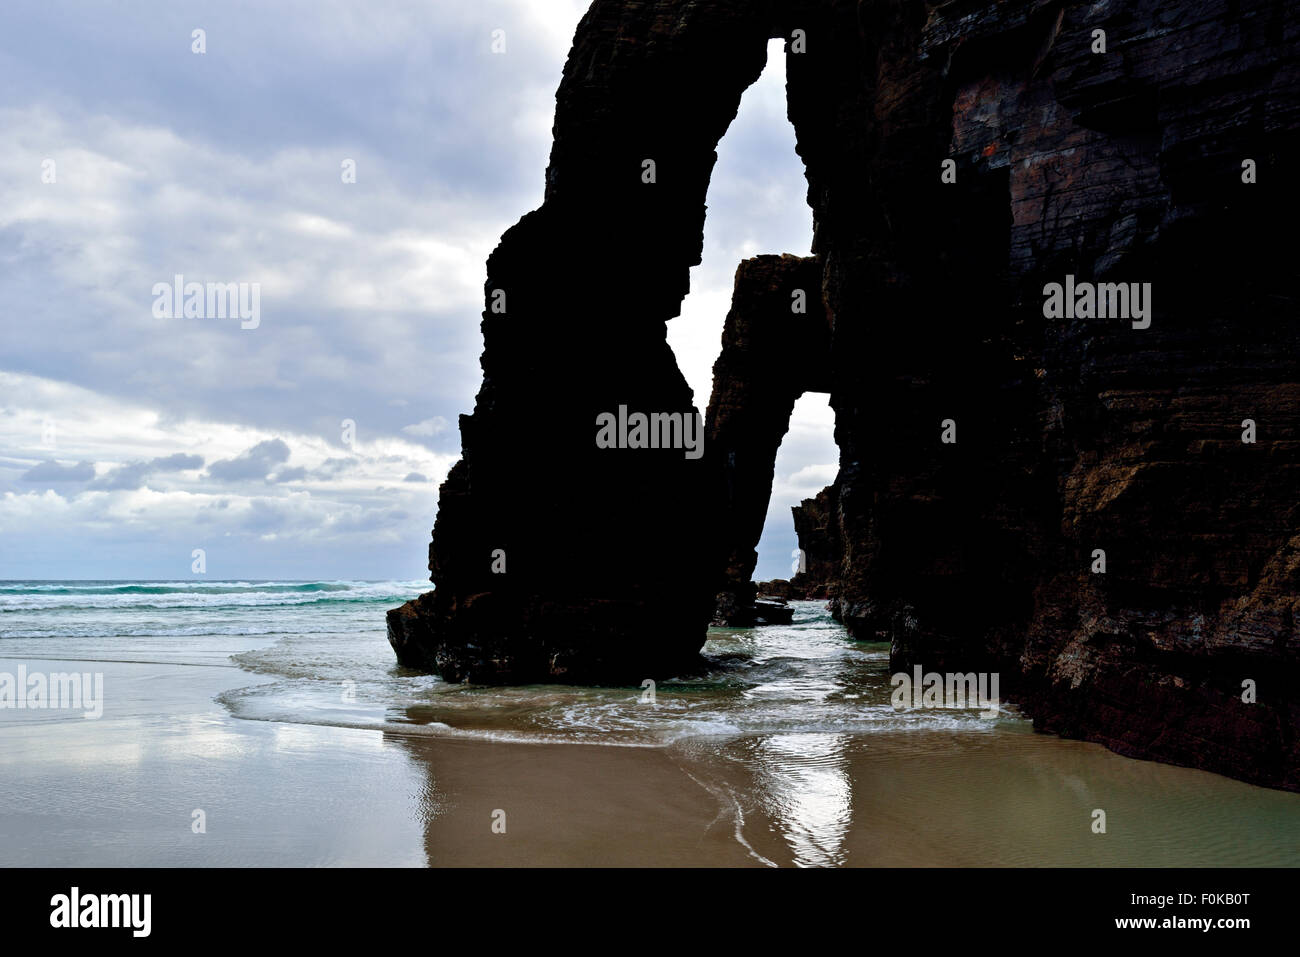 España, Galicia: Rock arcadas en la Catedral de playa con marea creciente Foto de stock